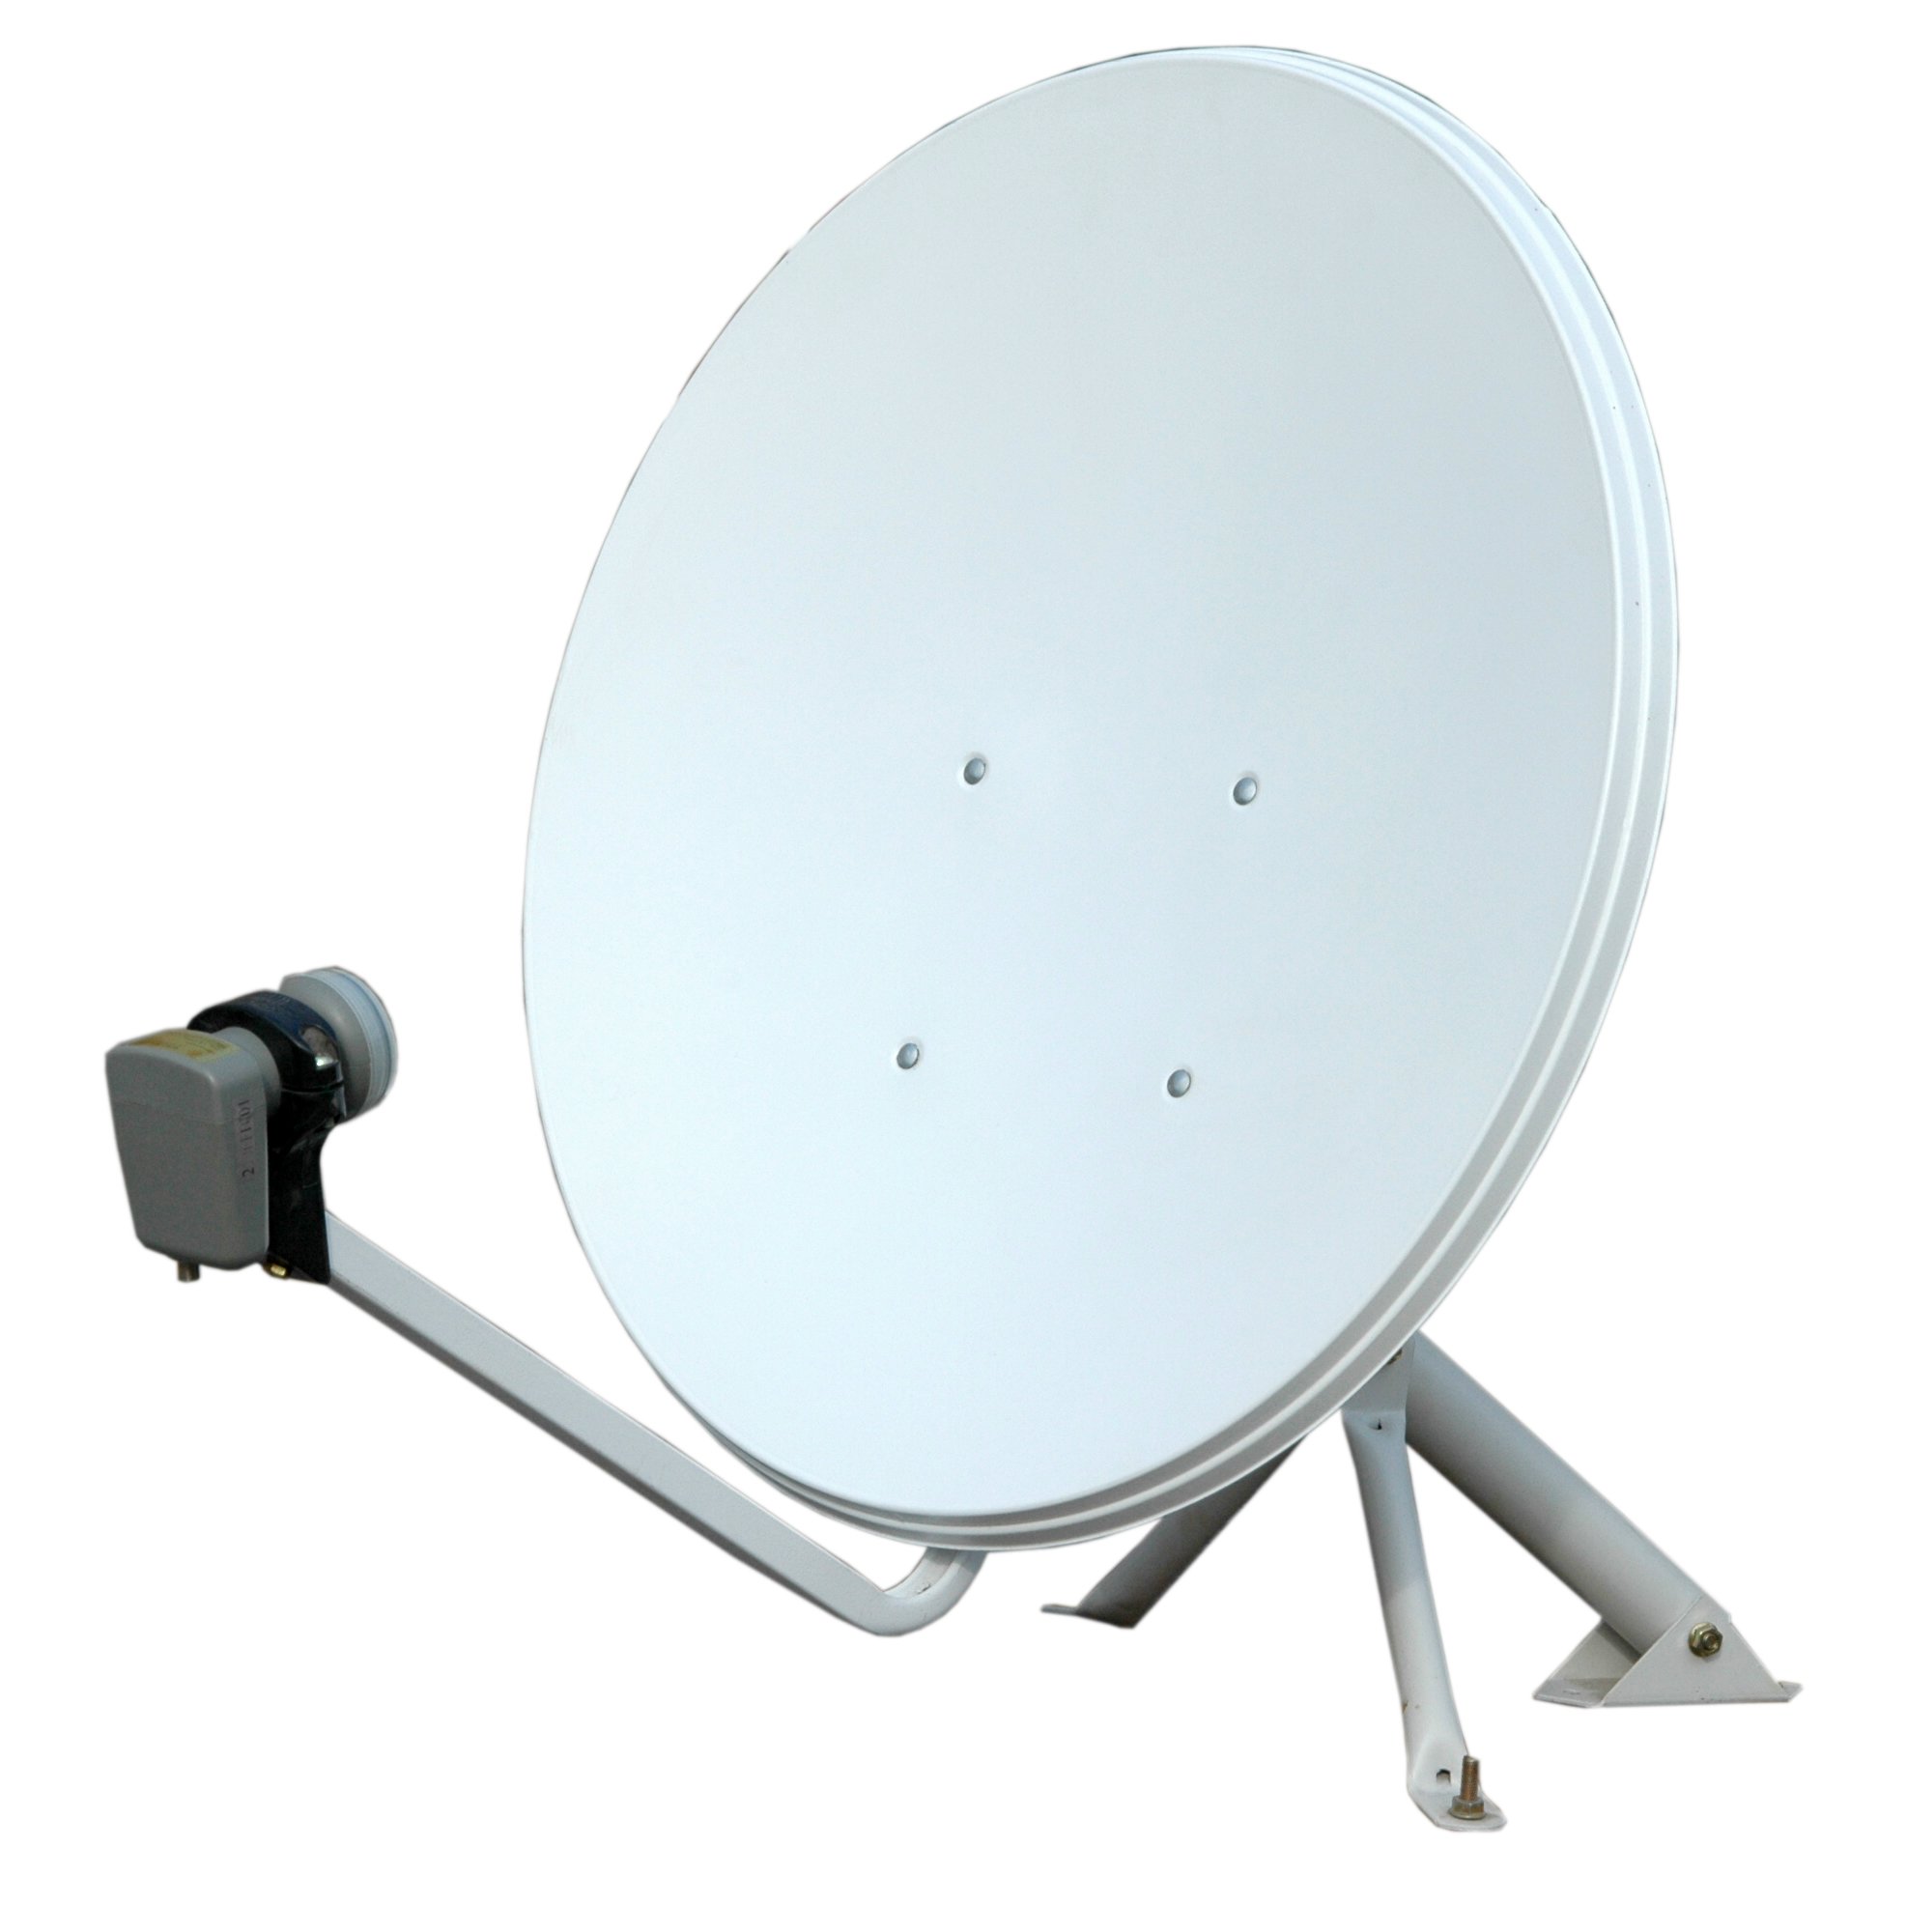 Ku-band 45cm Satellite Dish Antenna - Buy Satellite Antenna,Dish ...